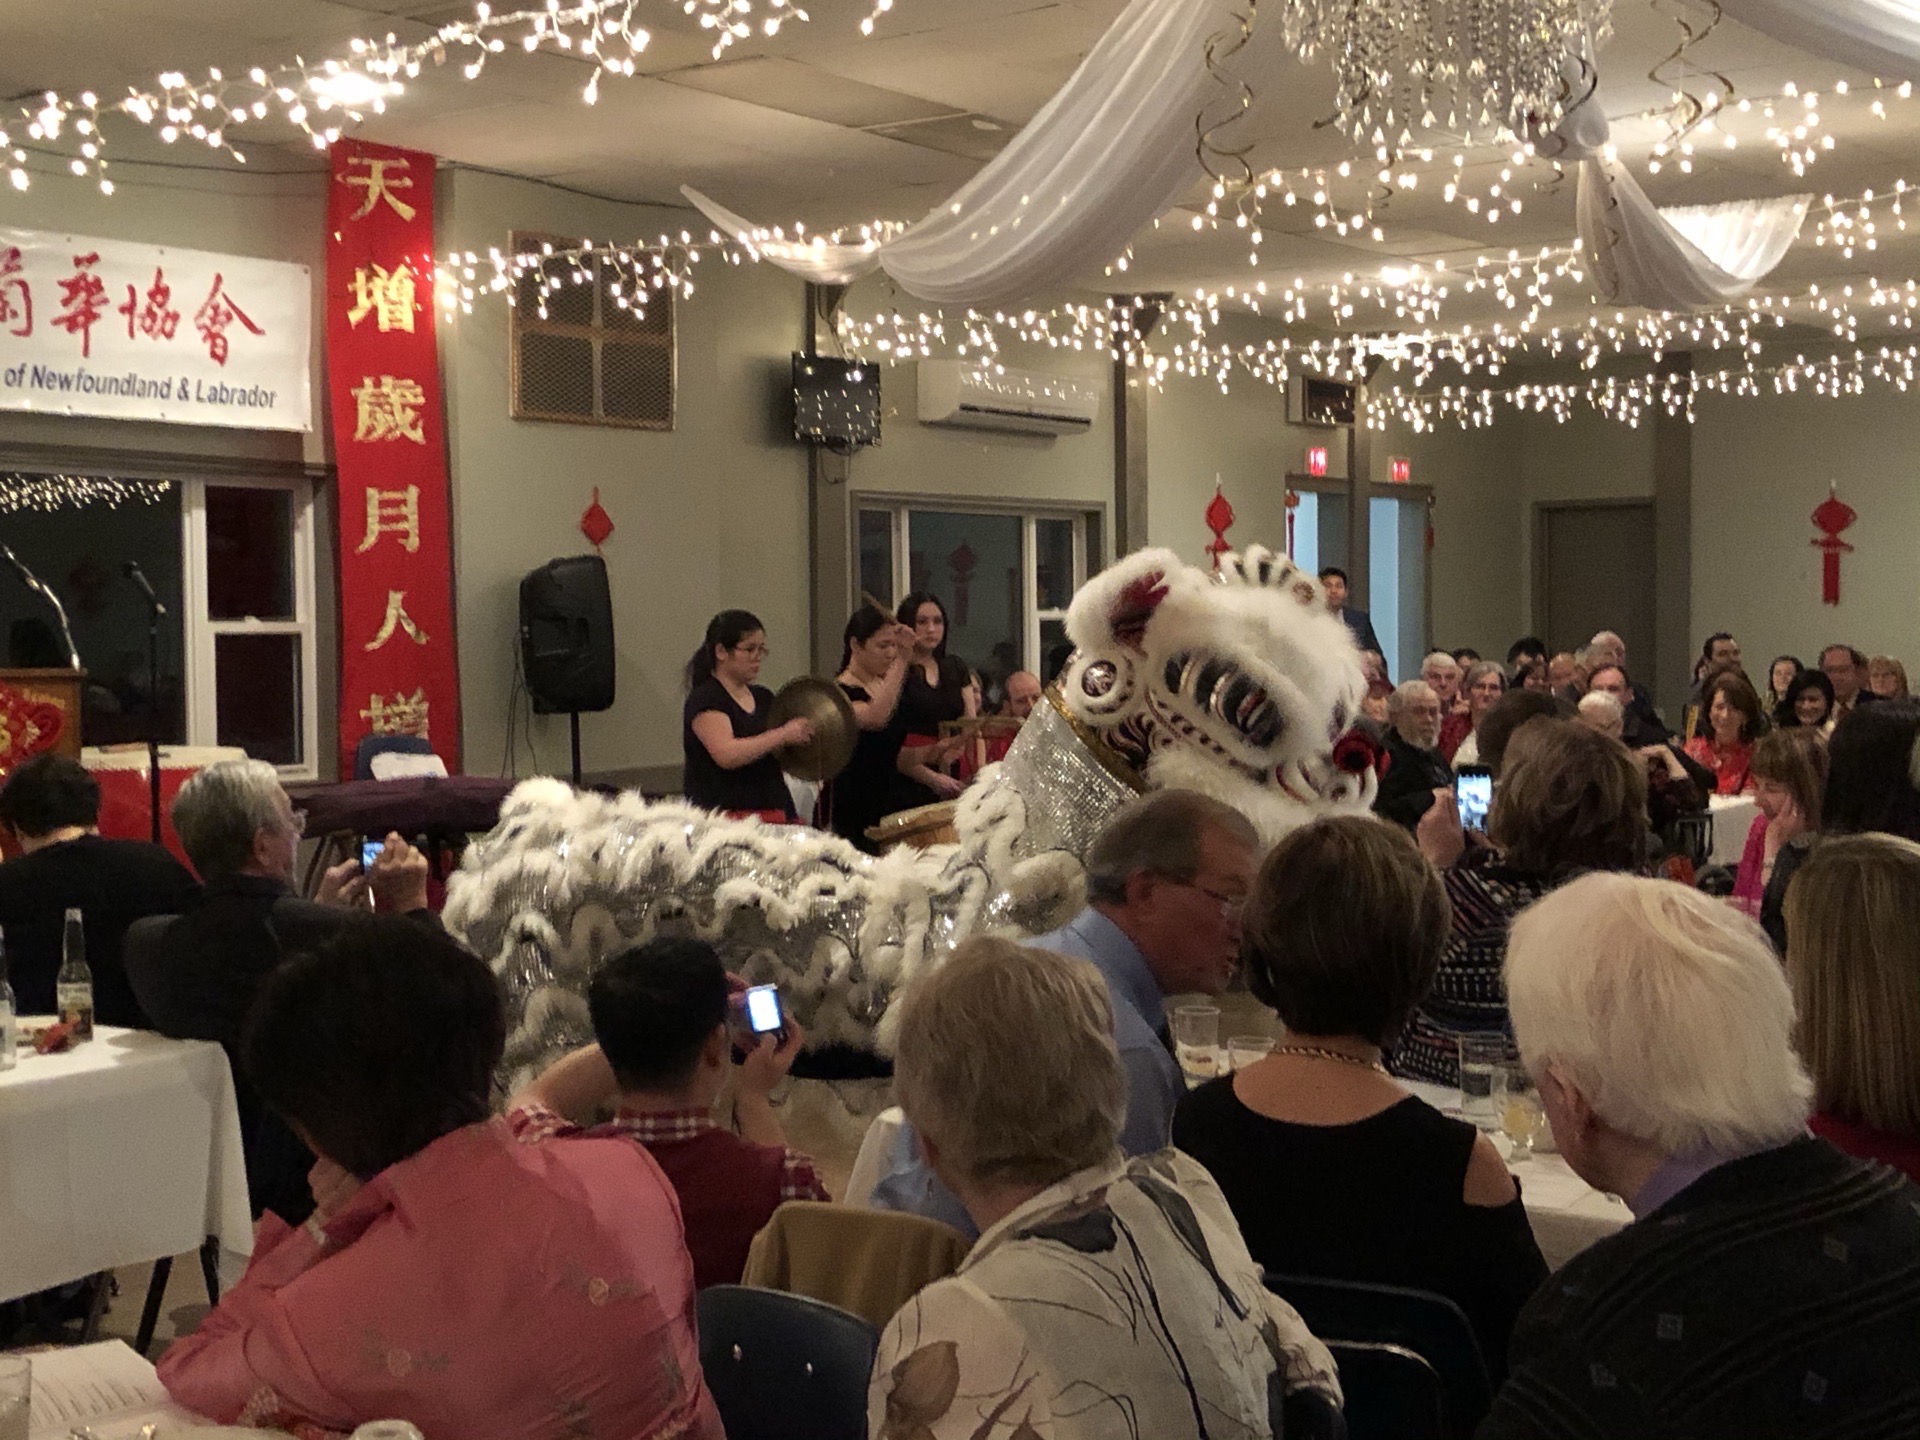 #传播中国文化# 大年初二纽芬兰华人协会组织的春节庆祝活动在热闹的气氛中开始了。当地华人、留学生精心